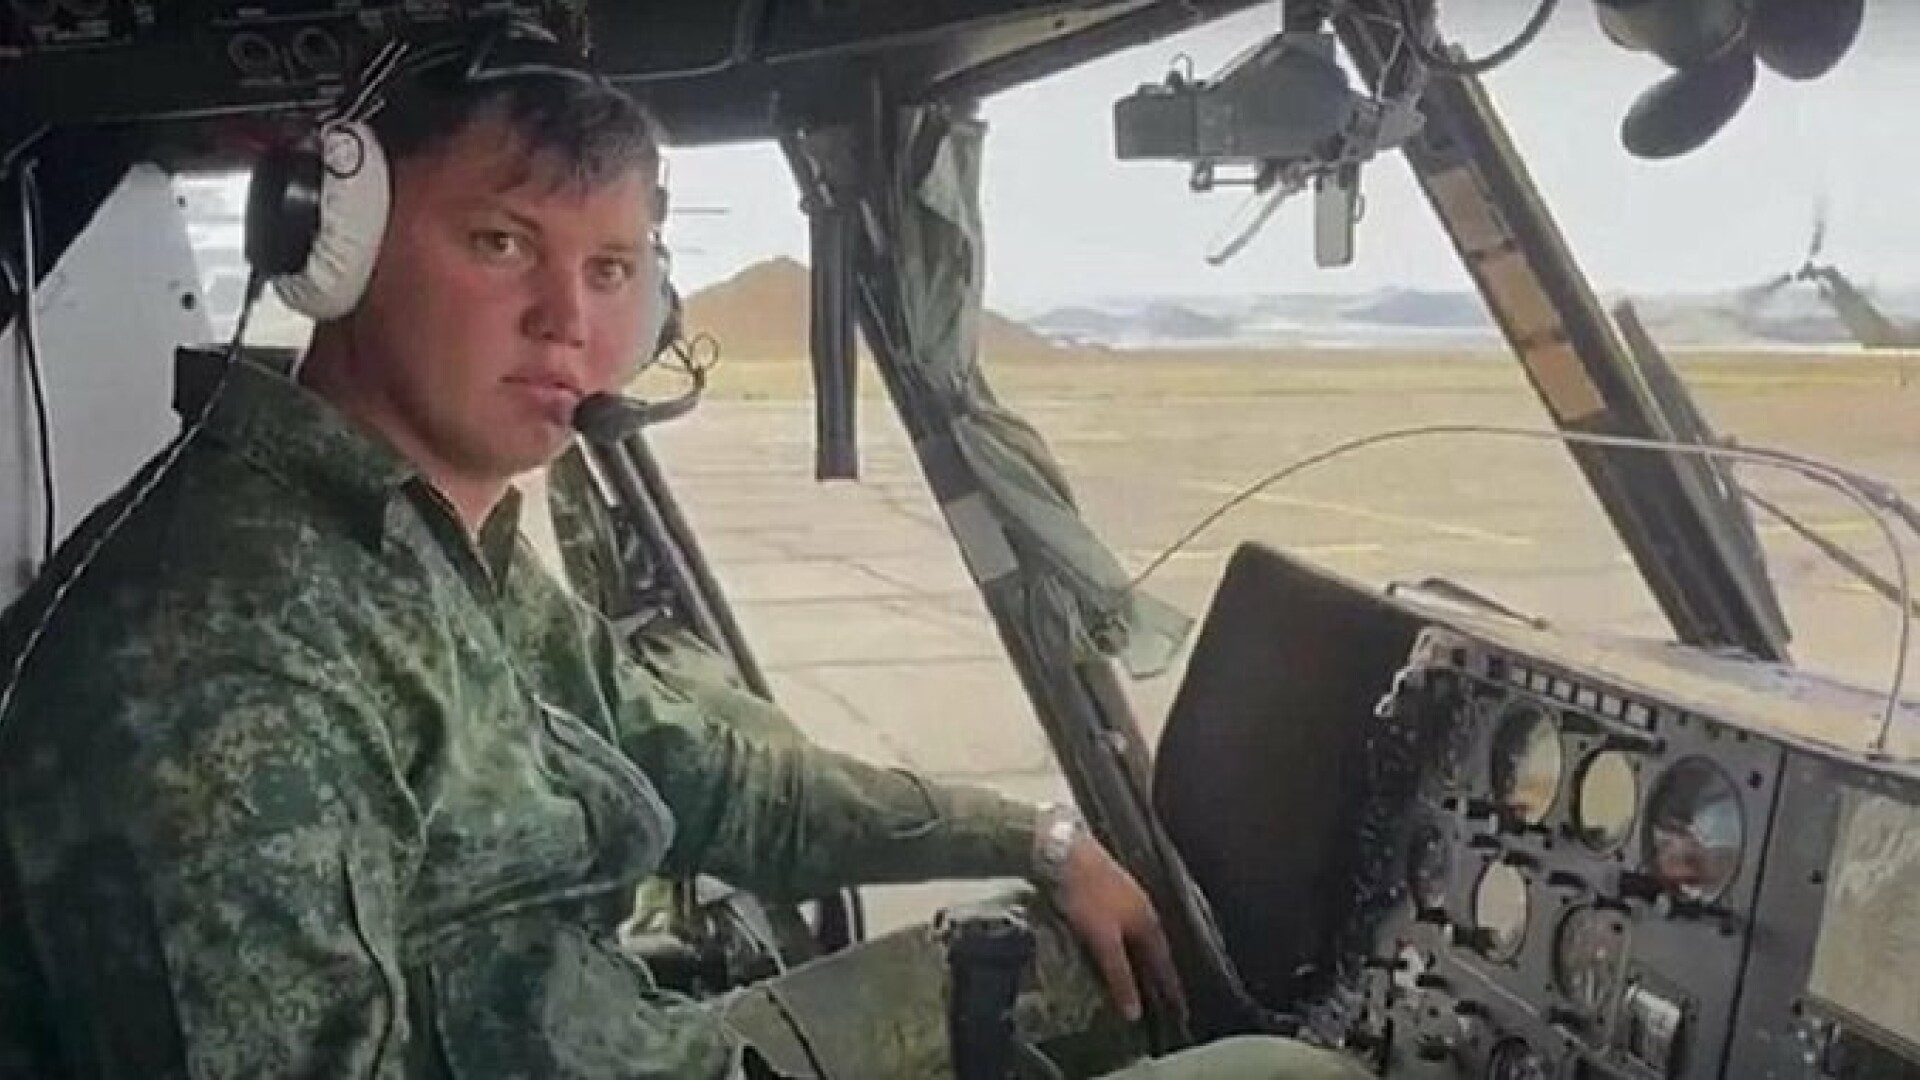 Un pilot rus care a dezertat în Ucraina a fost găsit mort în Spania